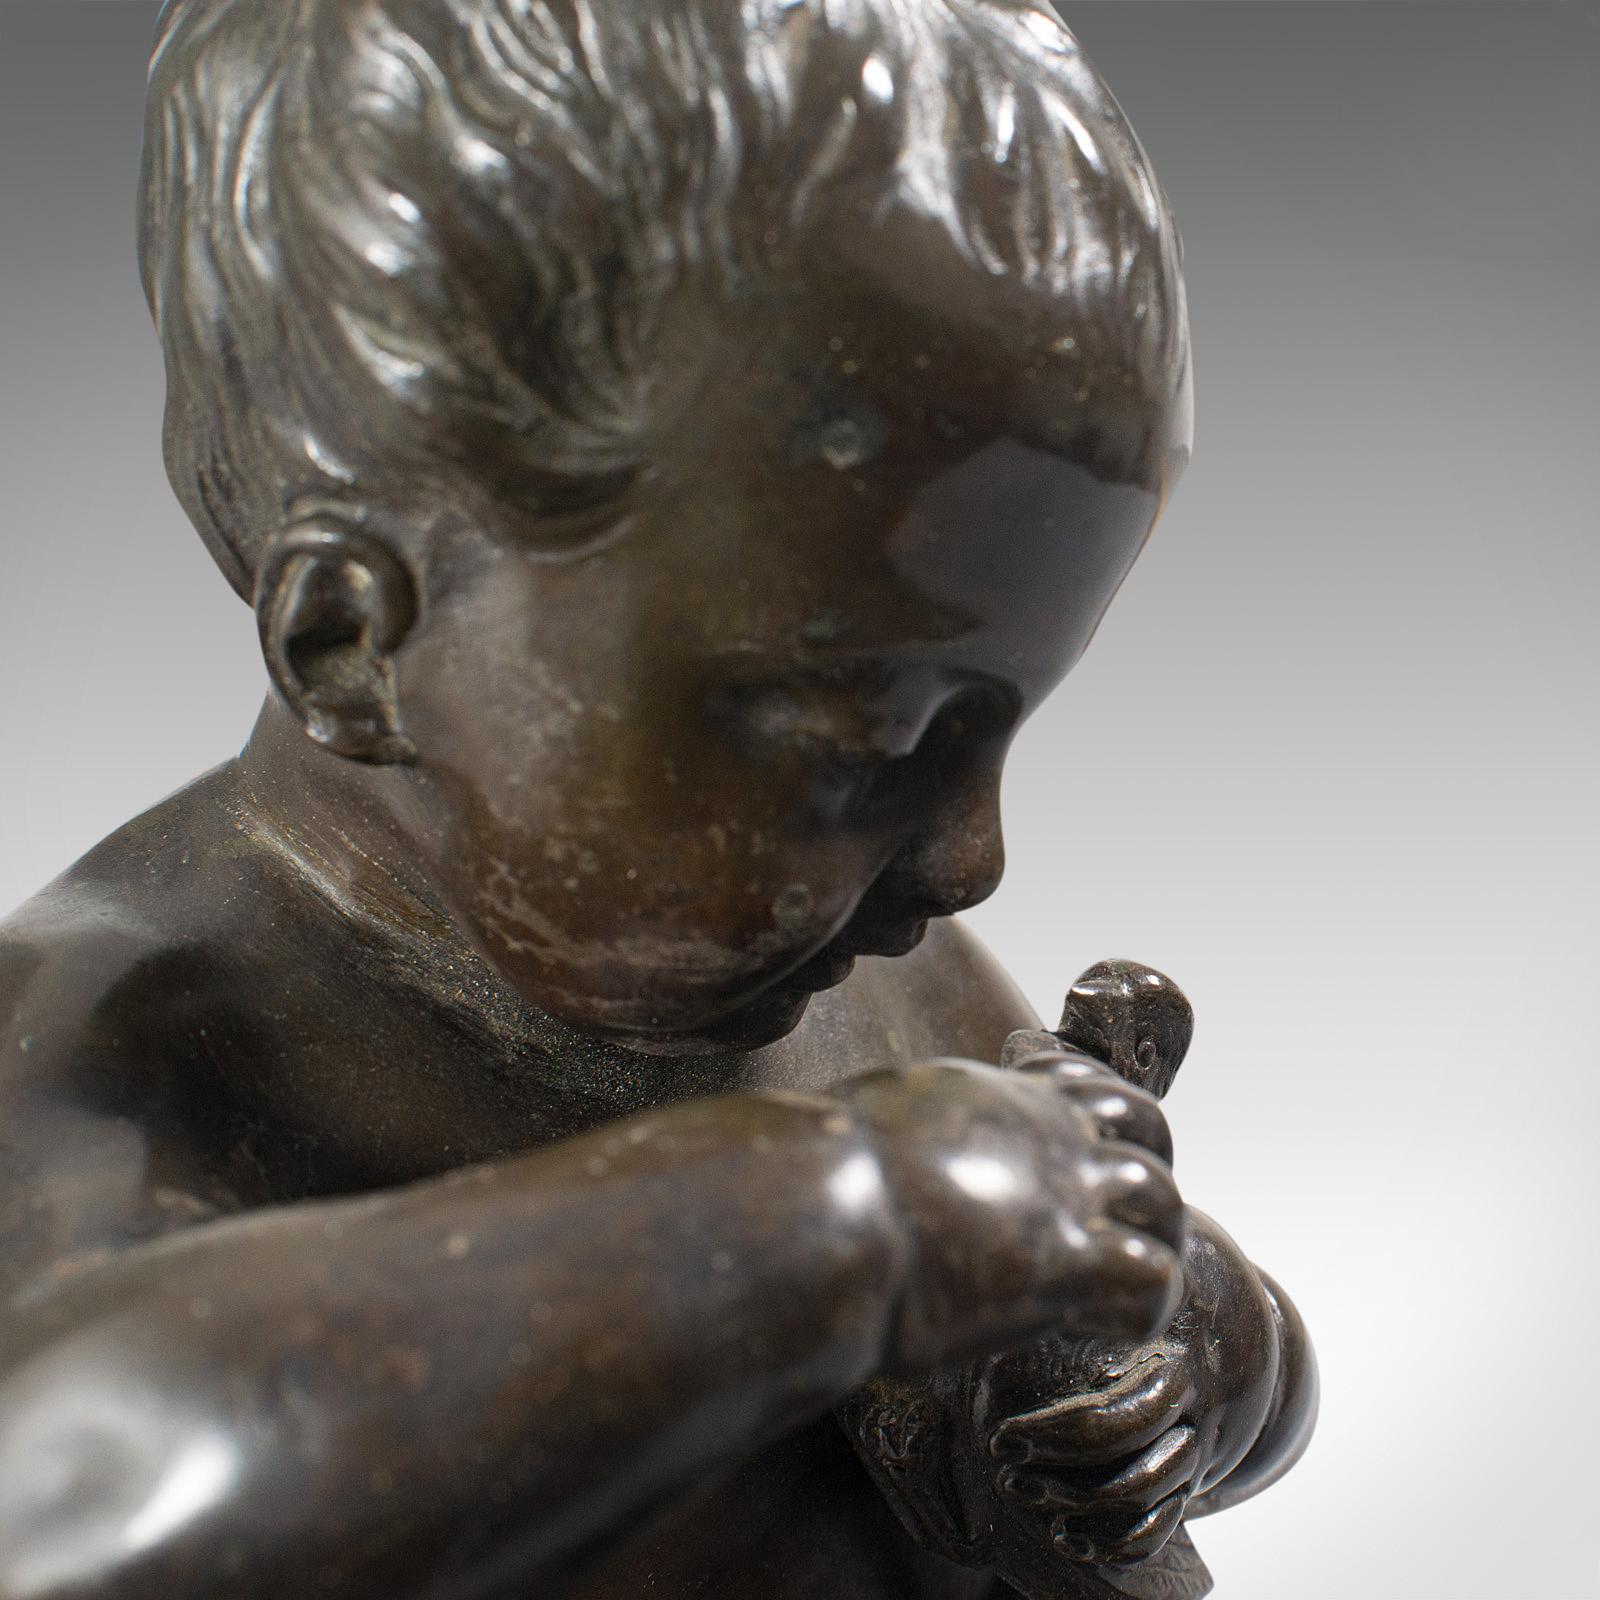 Antique Putto Statue, French, Bronze, Cherub Figure, Late 19th Century For Sale 6